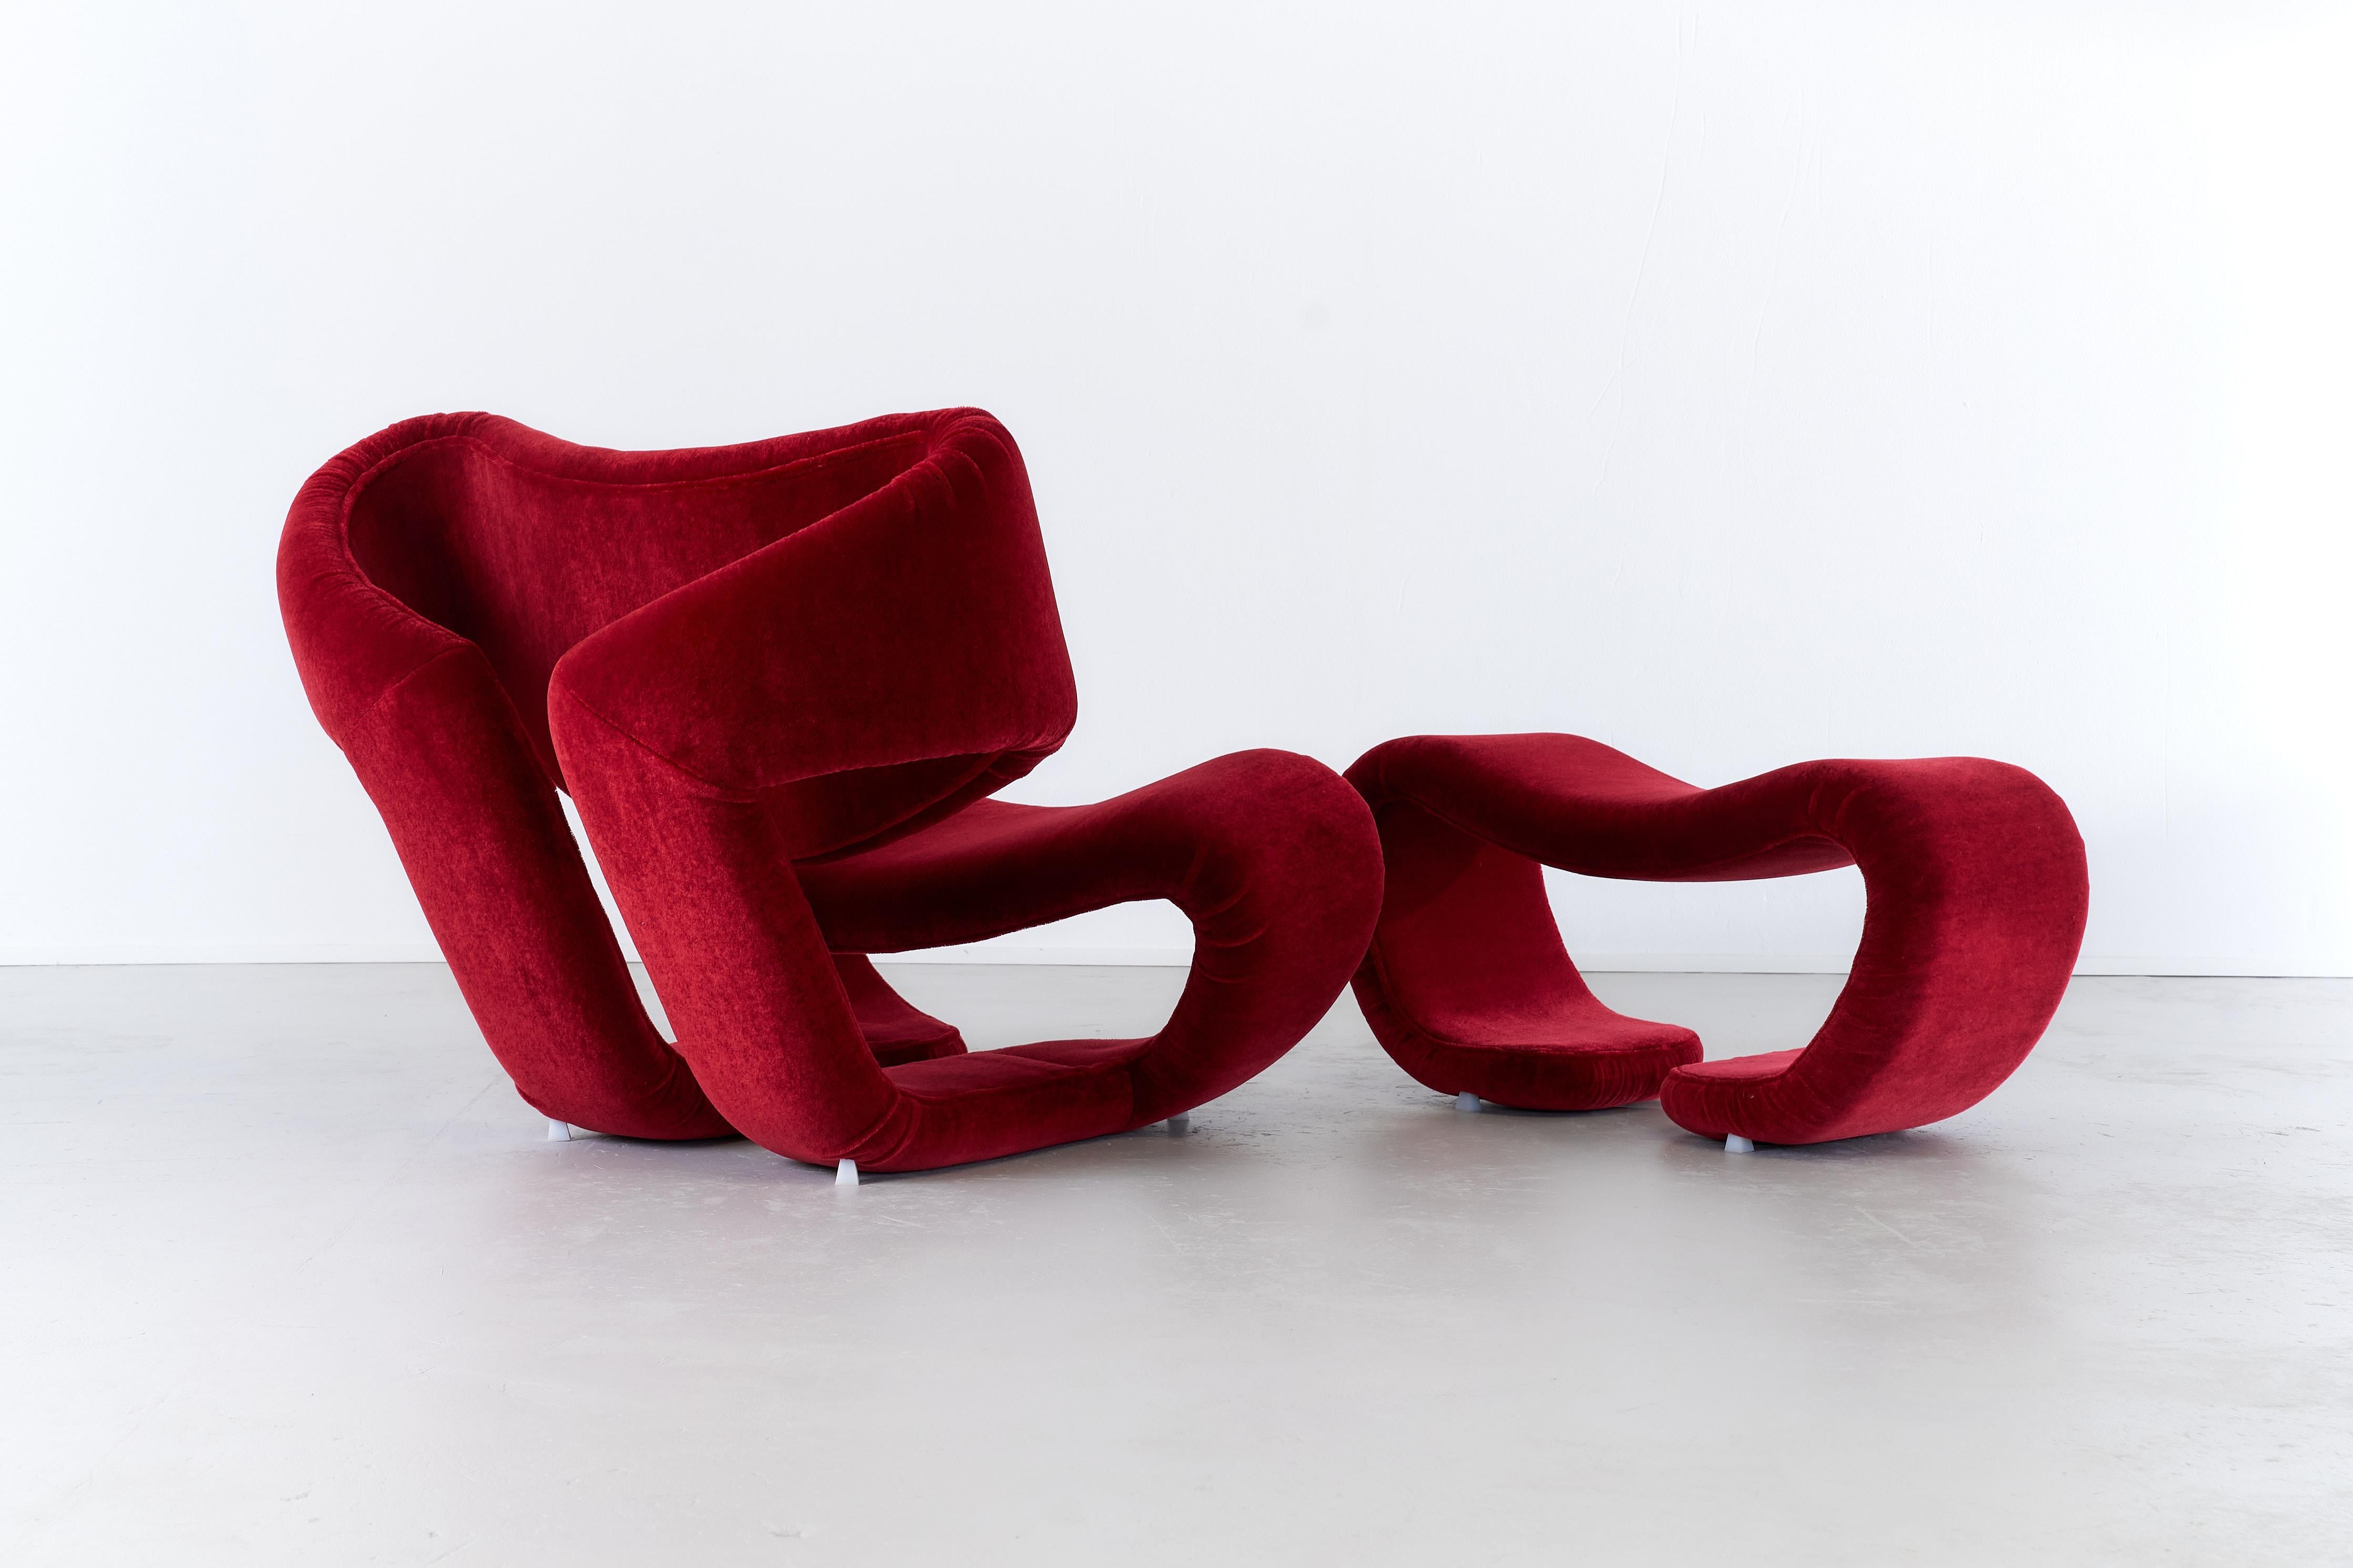 Der Scultura 190 Lounge Chair wurde in den 1970er Jahren von Vittorio Introini für Saporiti entworfen und verkörpert die unverwechselbare Formensprache des visionären Designers. Die skulpturale Form des Stuhls spiegelt Introinis unverkennbaren Stil